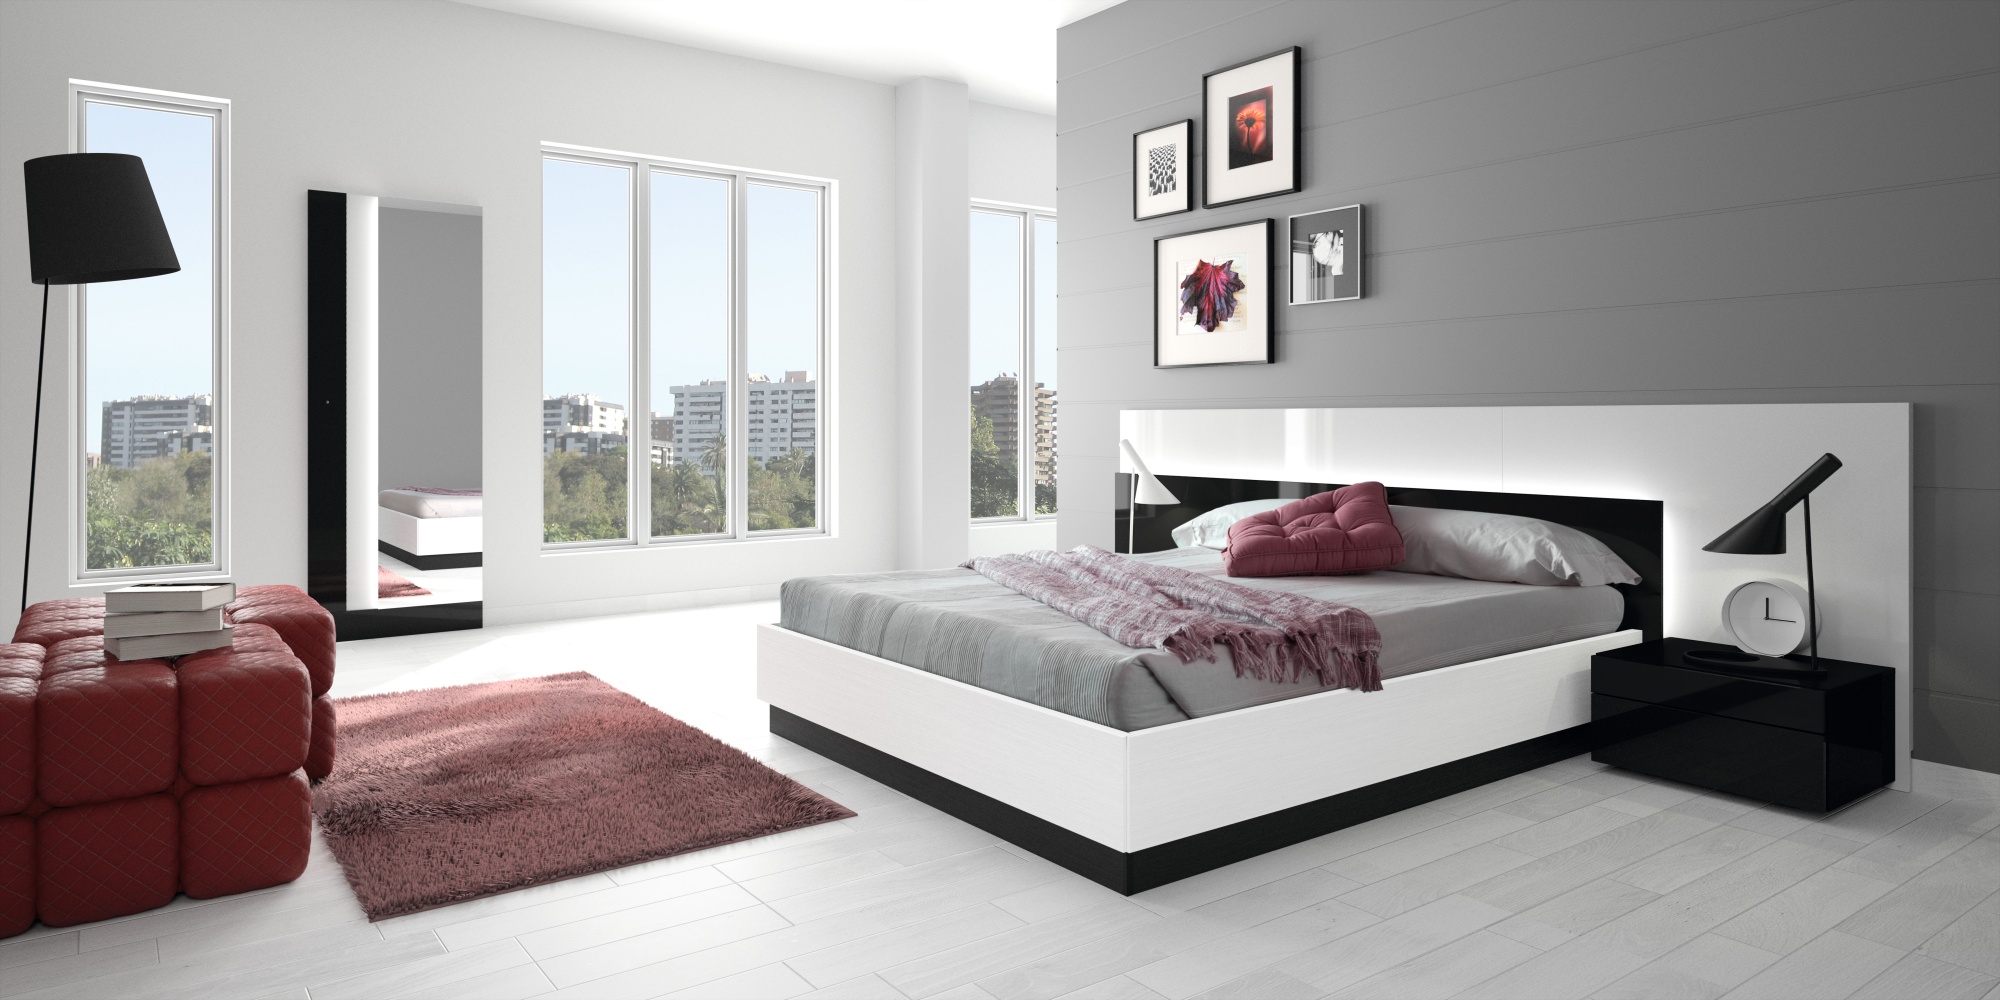 design of bedroom furniture